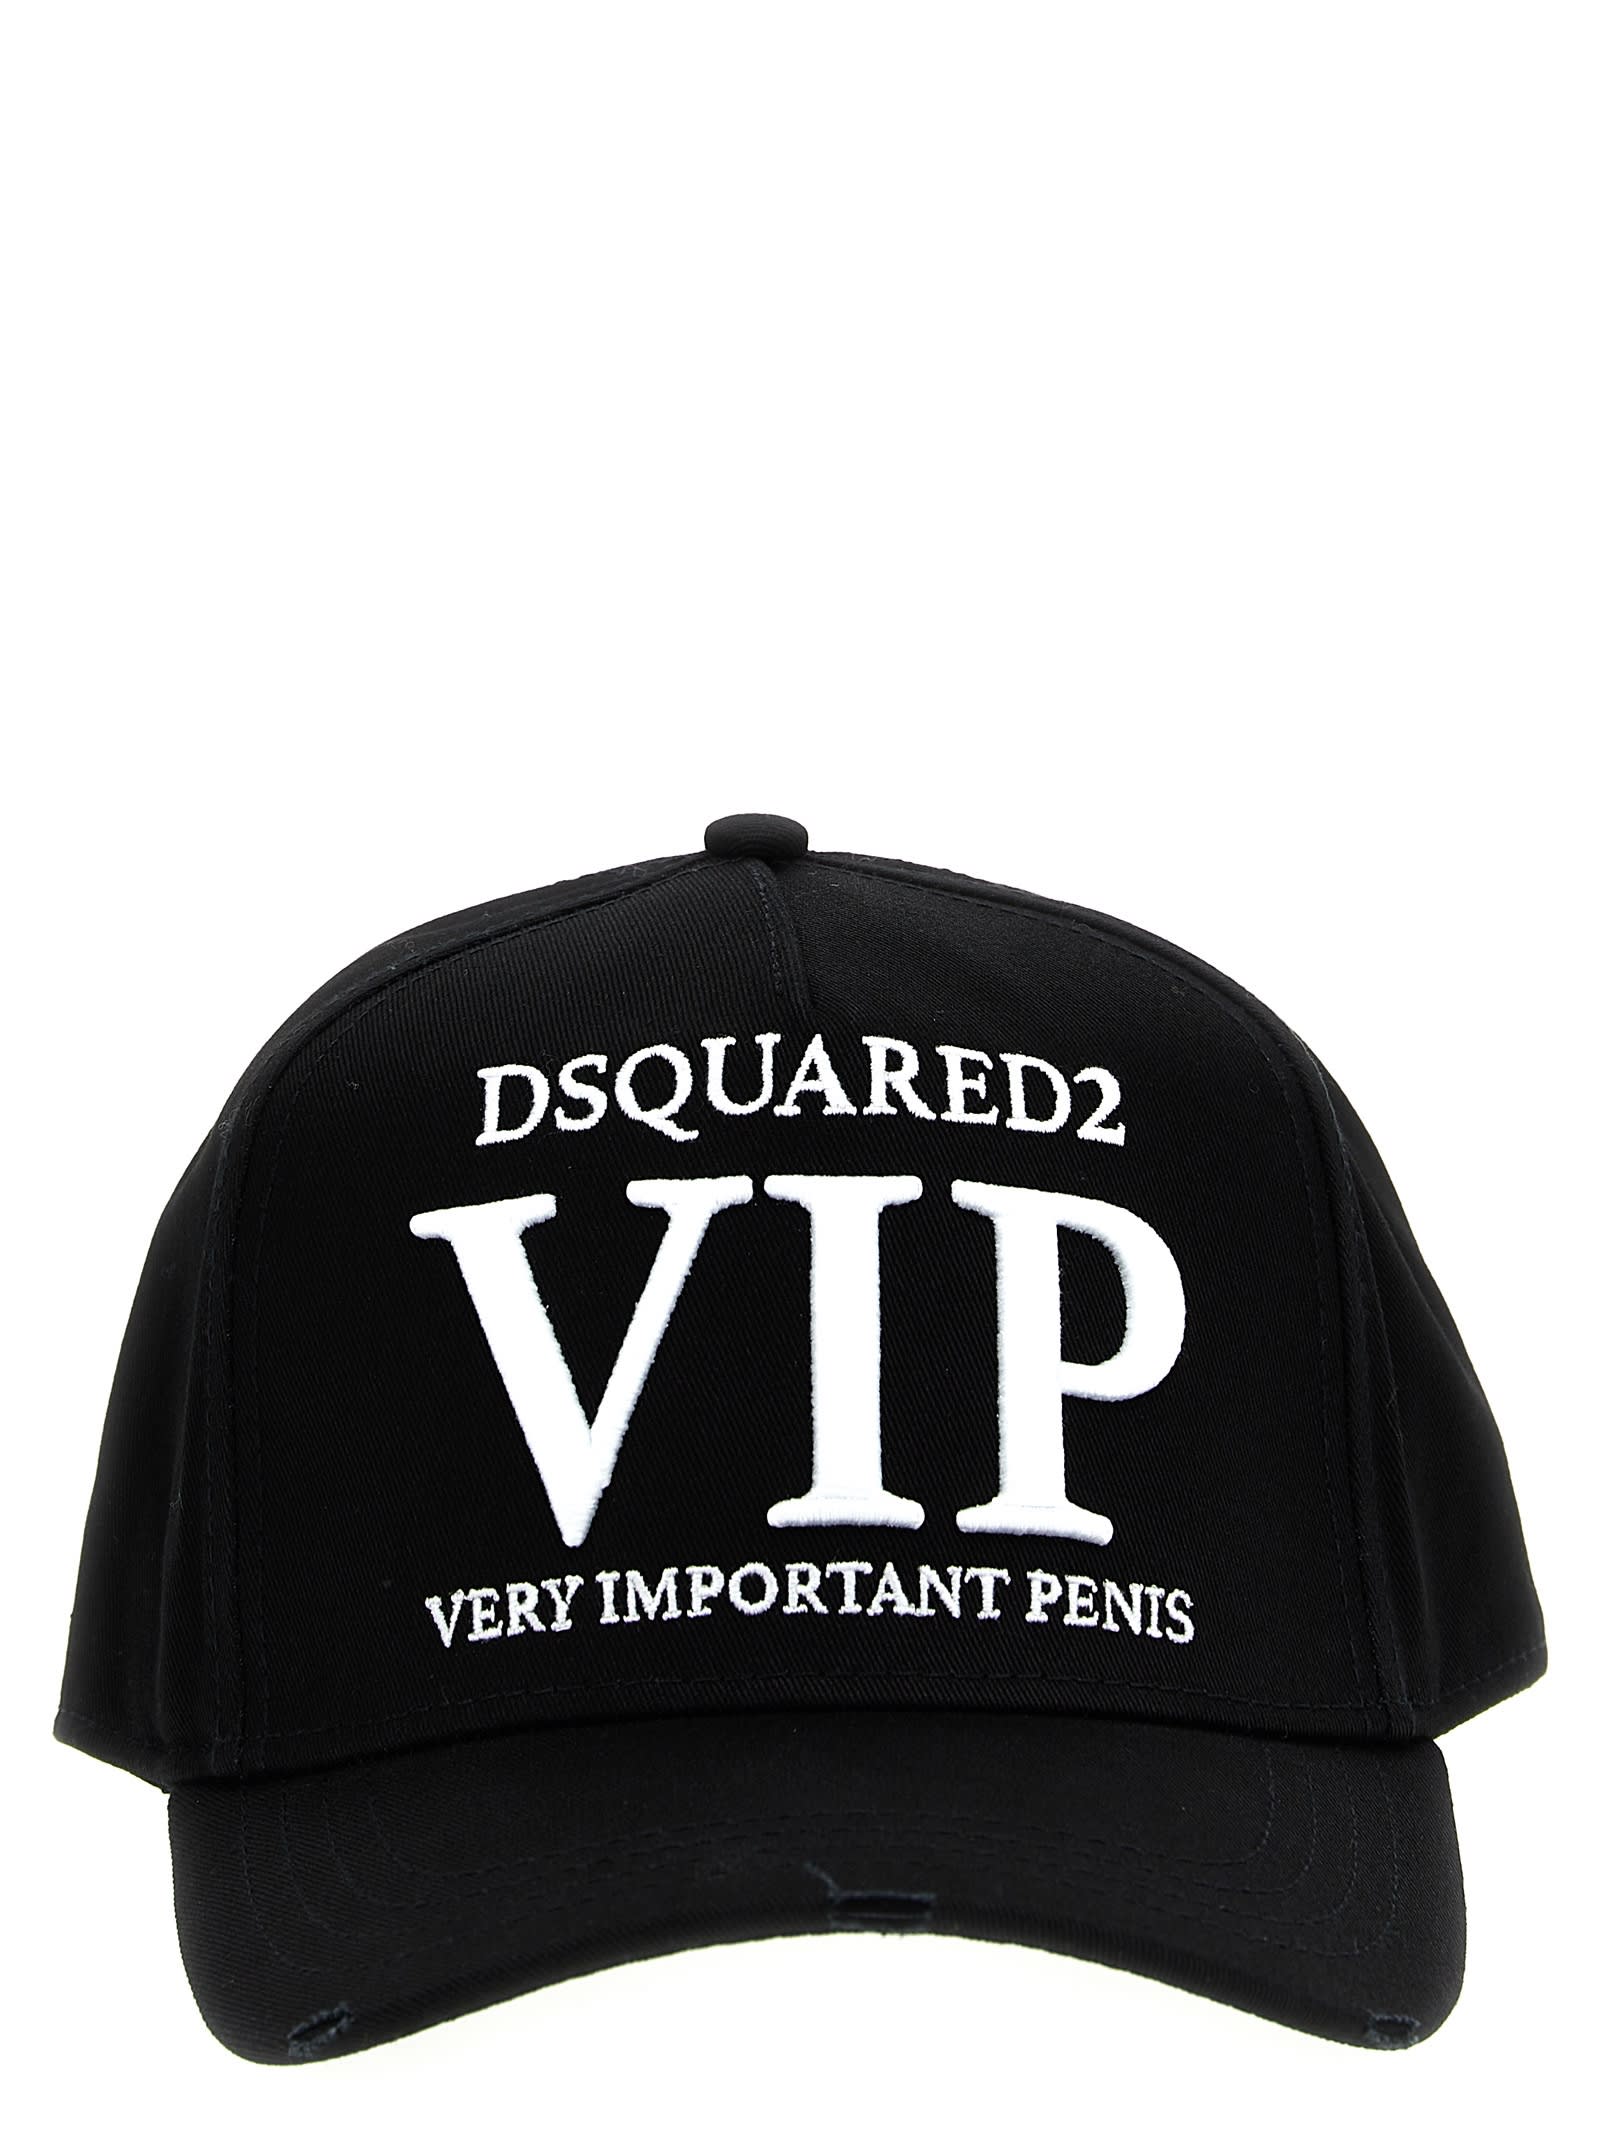 DSQUARED2 VIP CAP